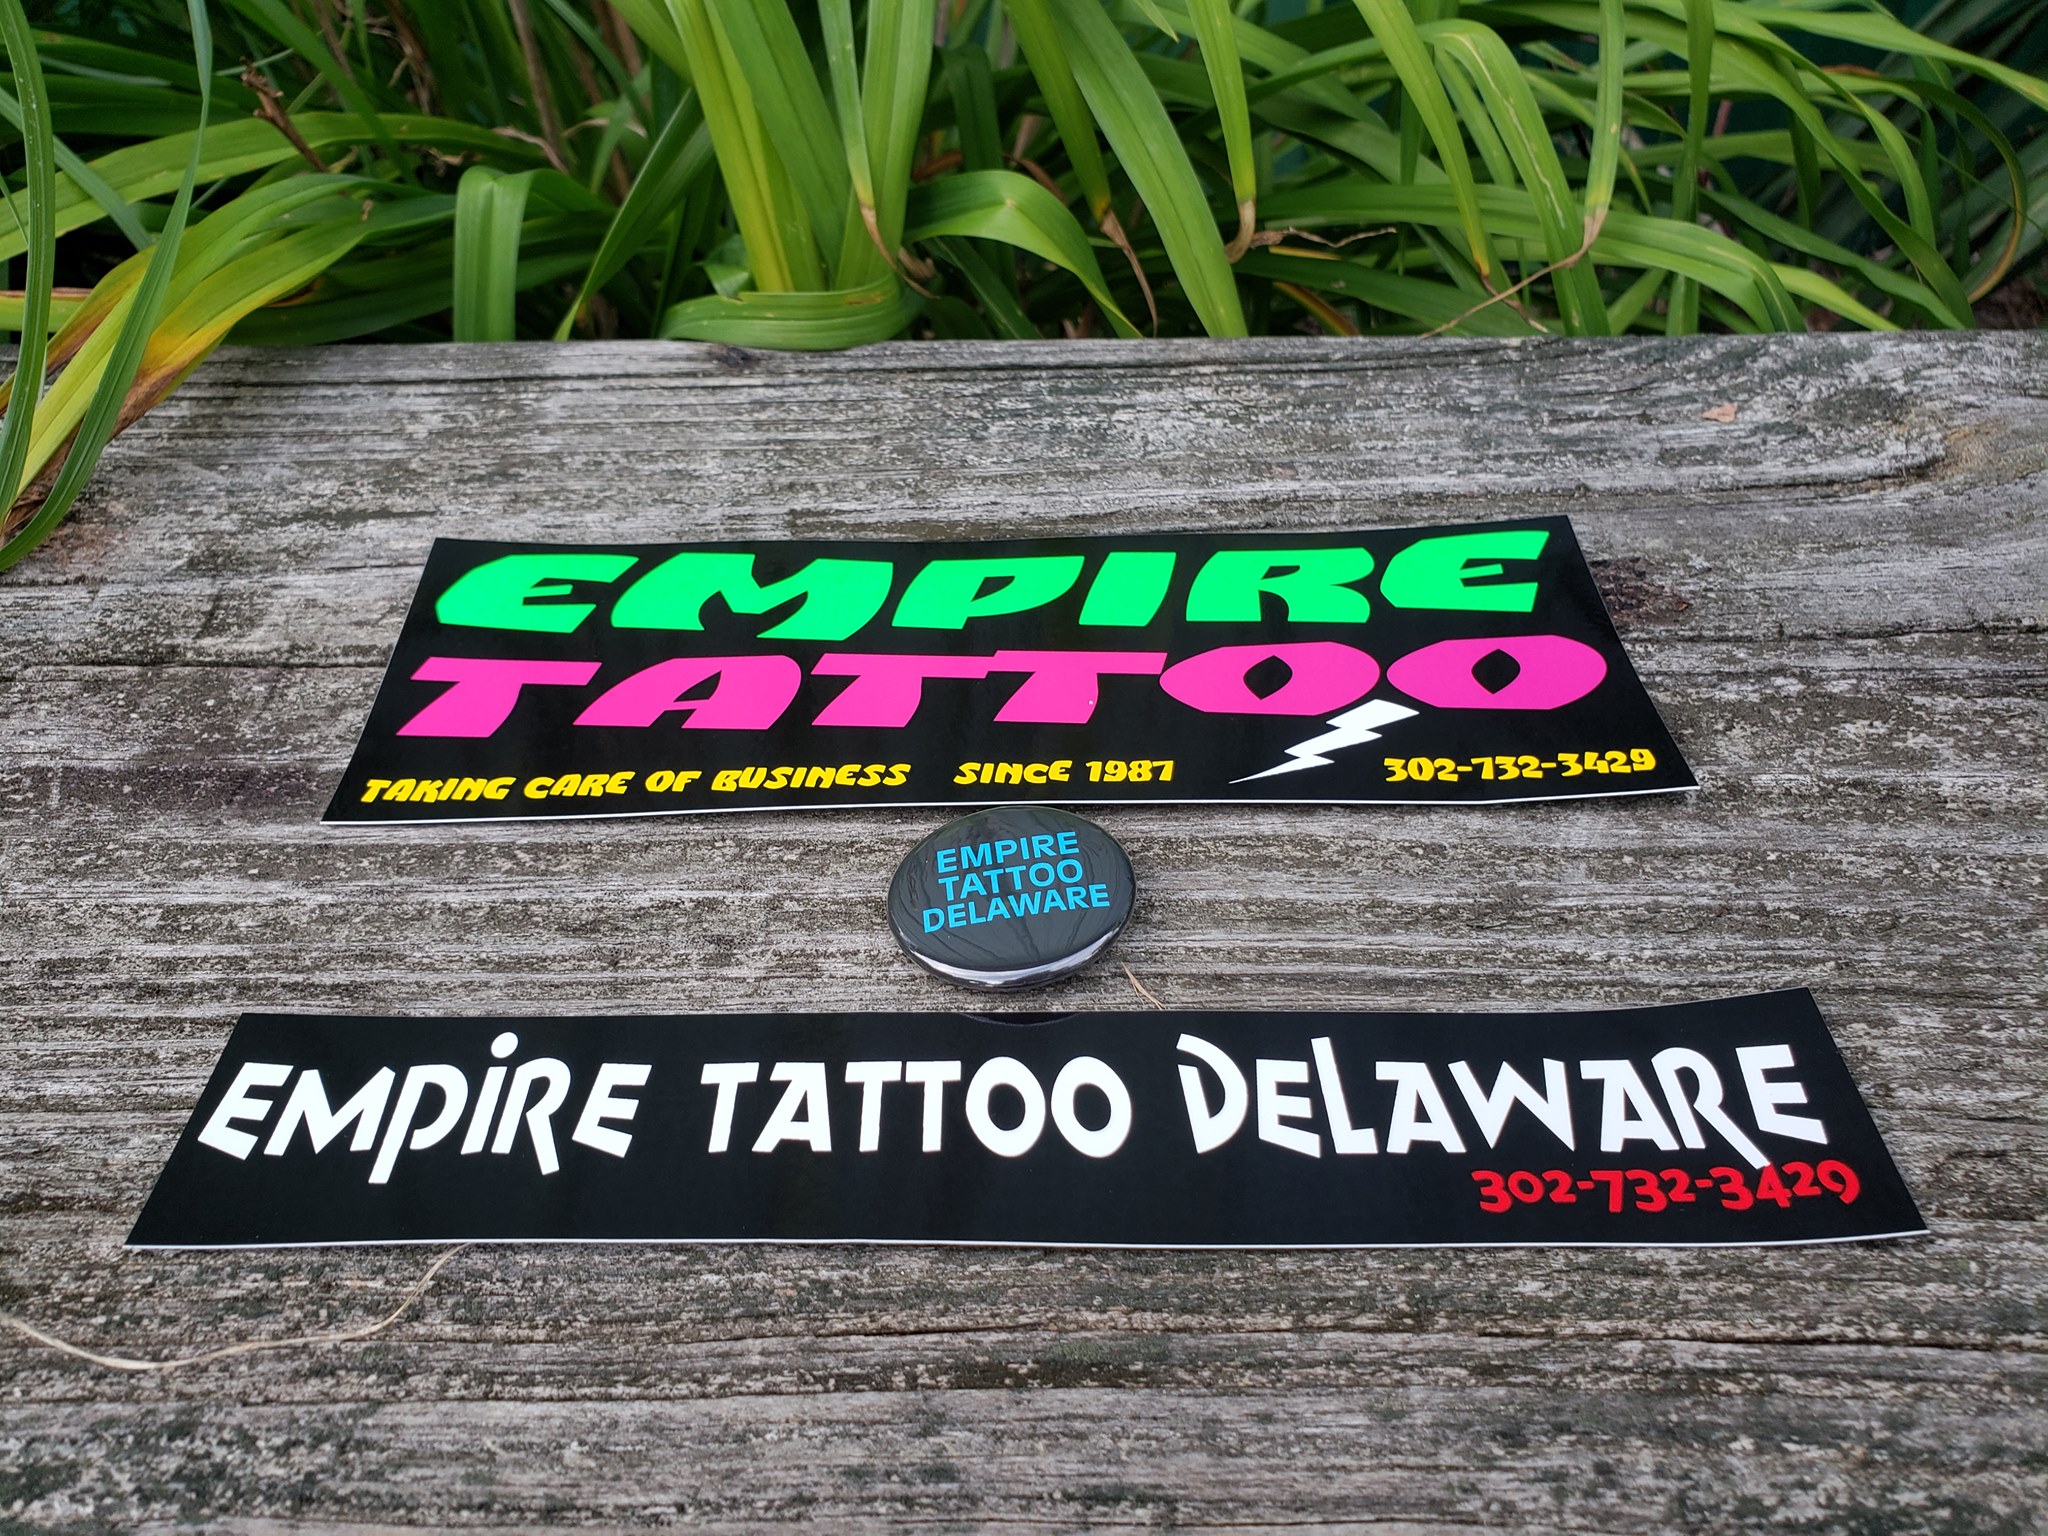 David Mitchell's Empire Tattoo